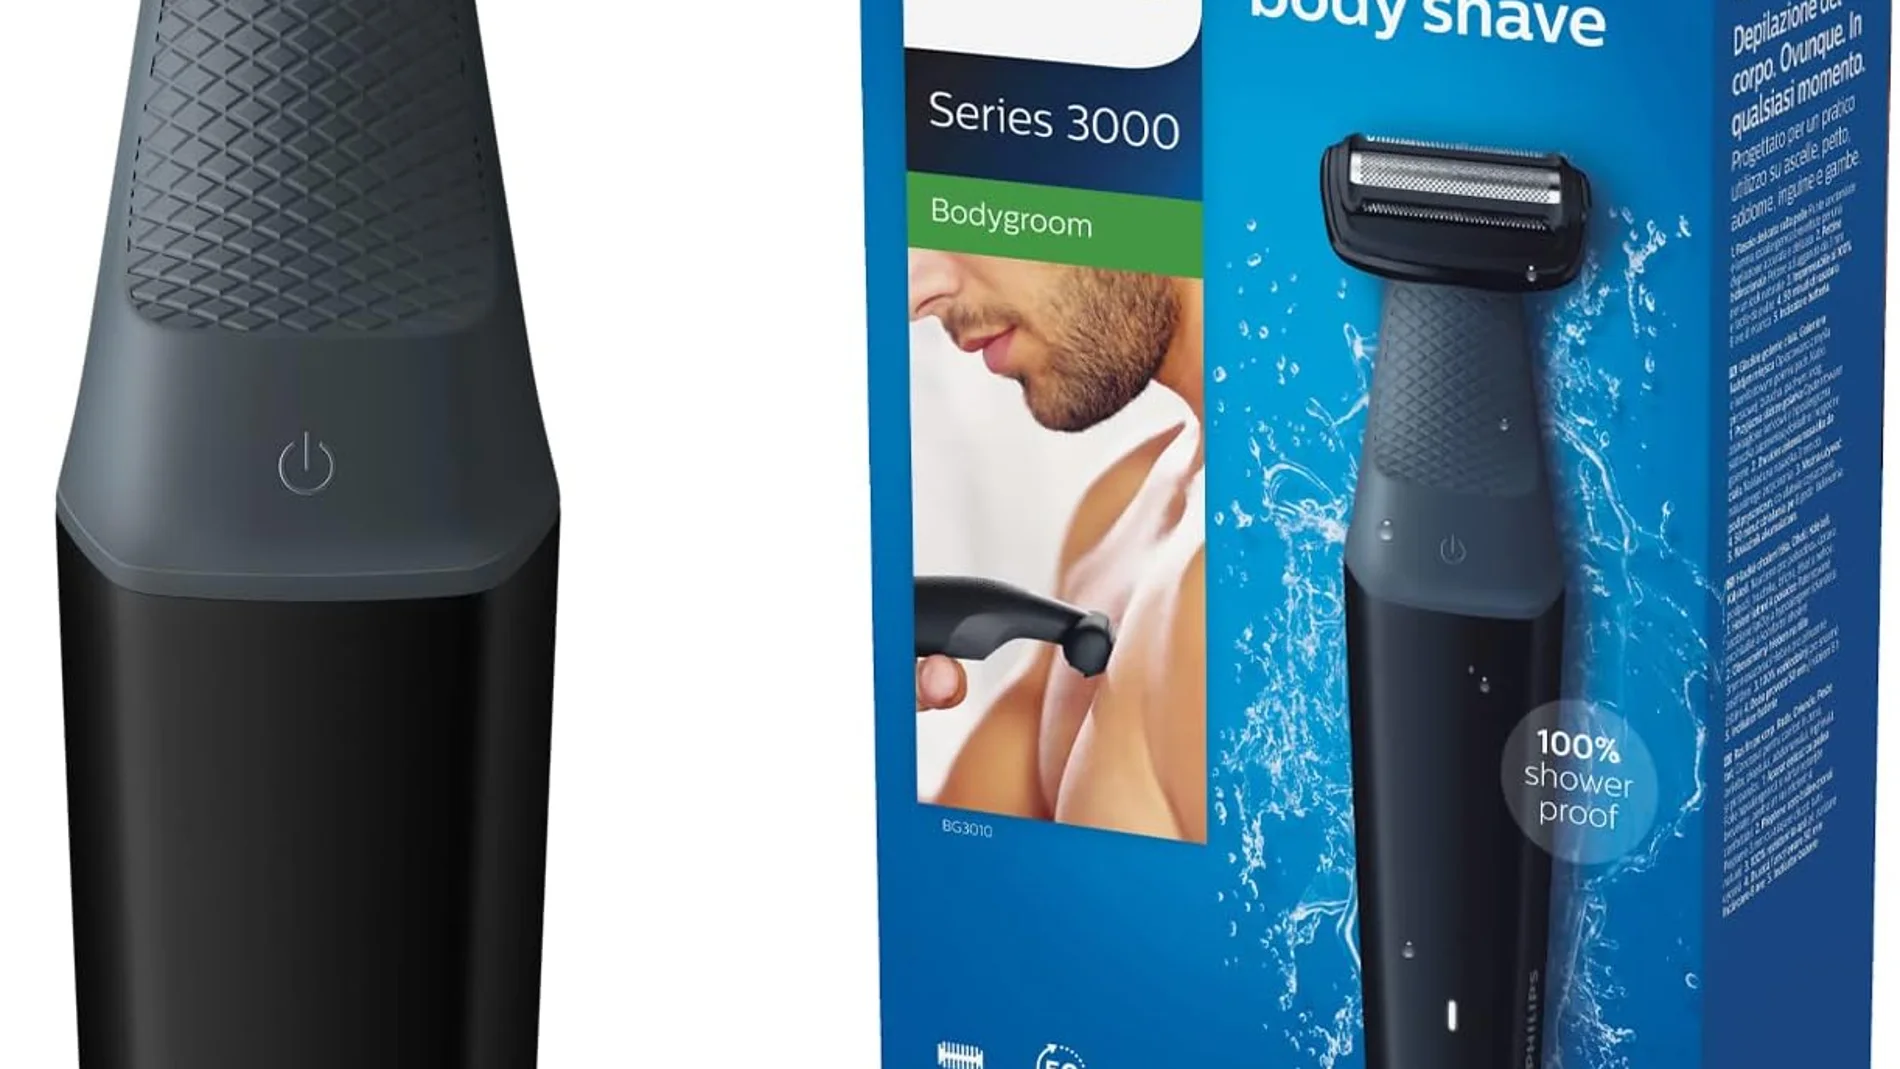 Una afeitadora corporal para la ducha por 30 euros (y es Philips)